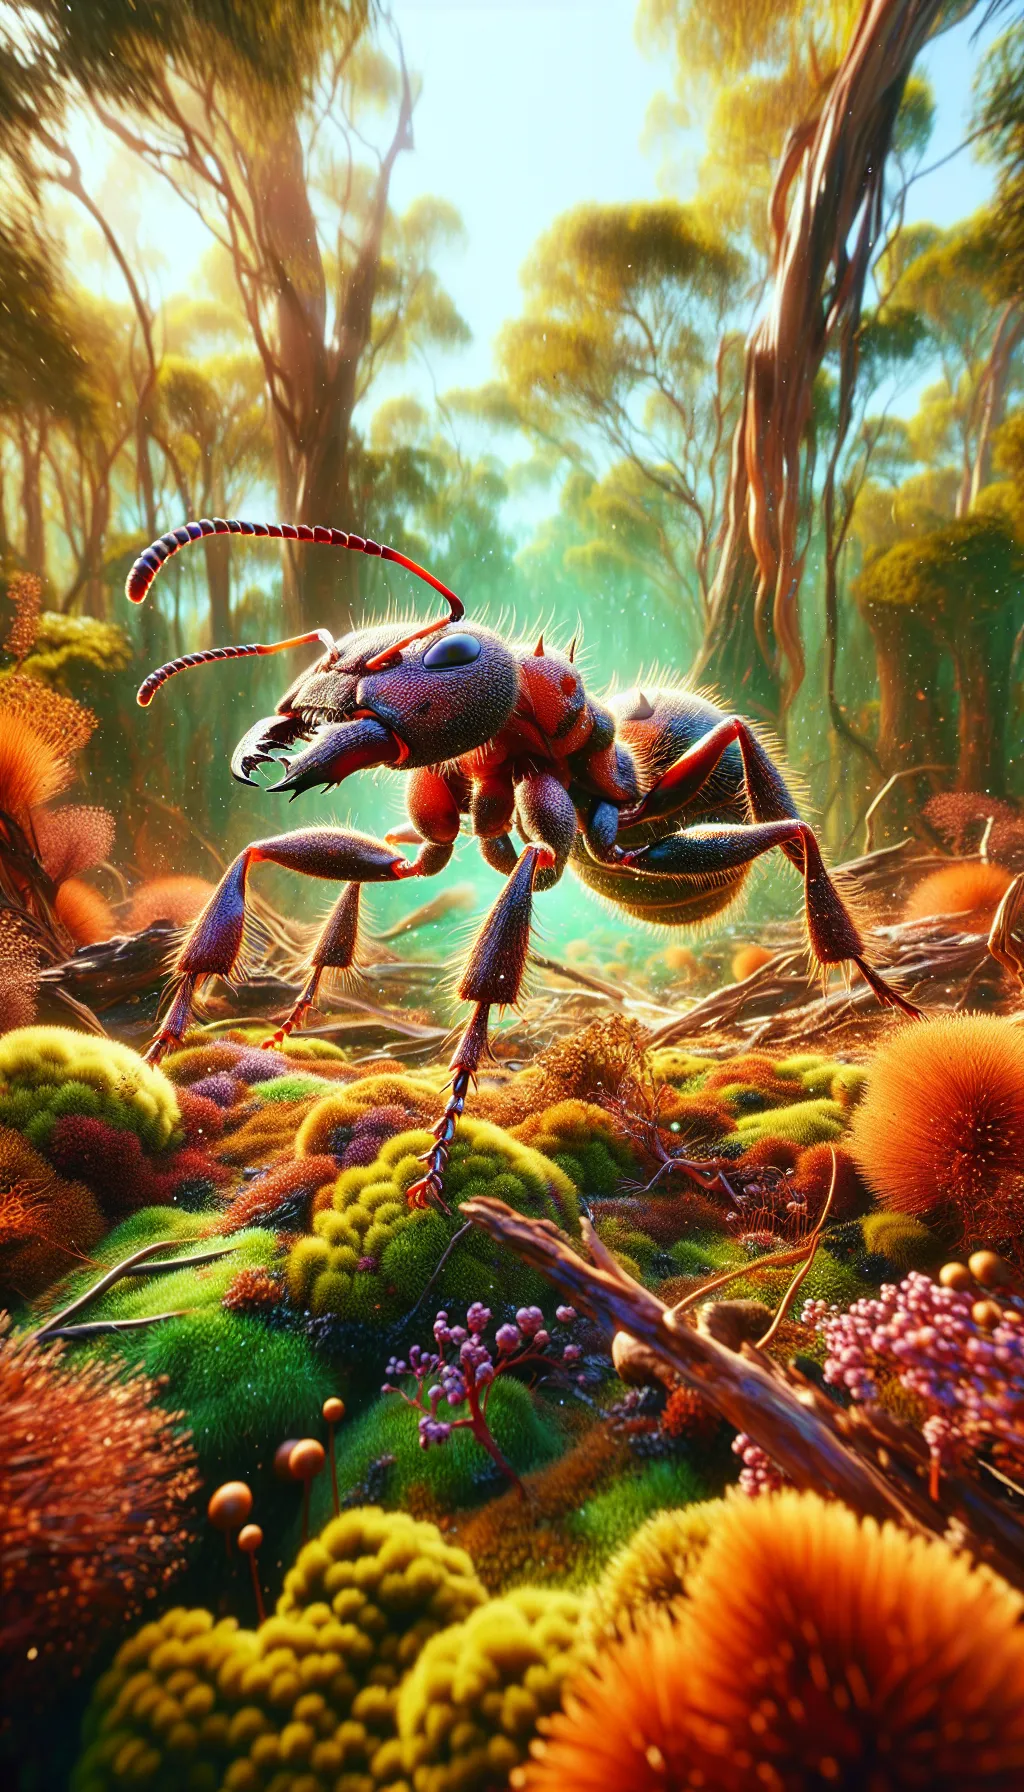 Bulldog Ant - Animal Matchup